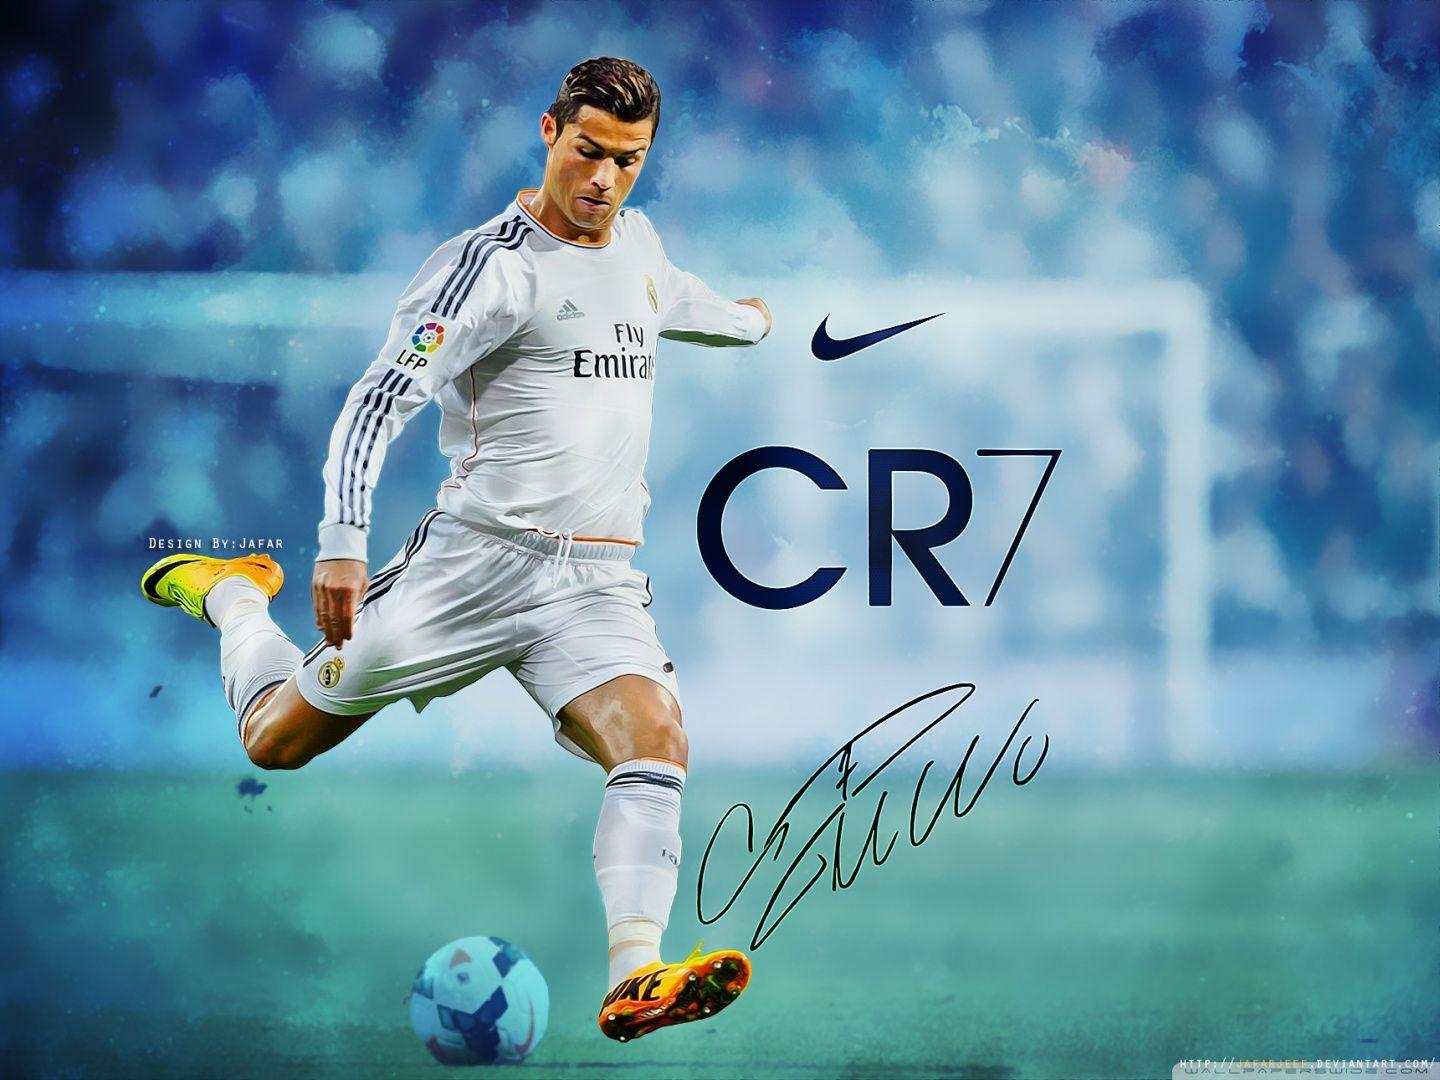 Cristiano Ronaldo Cool Wallpaper Free Cristiano Ronaldo